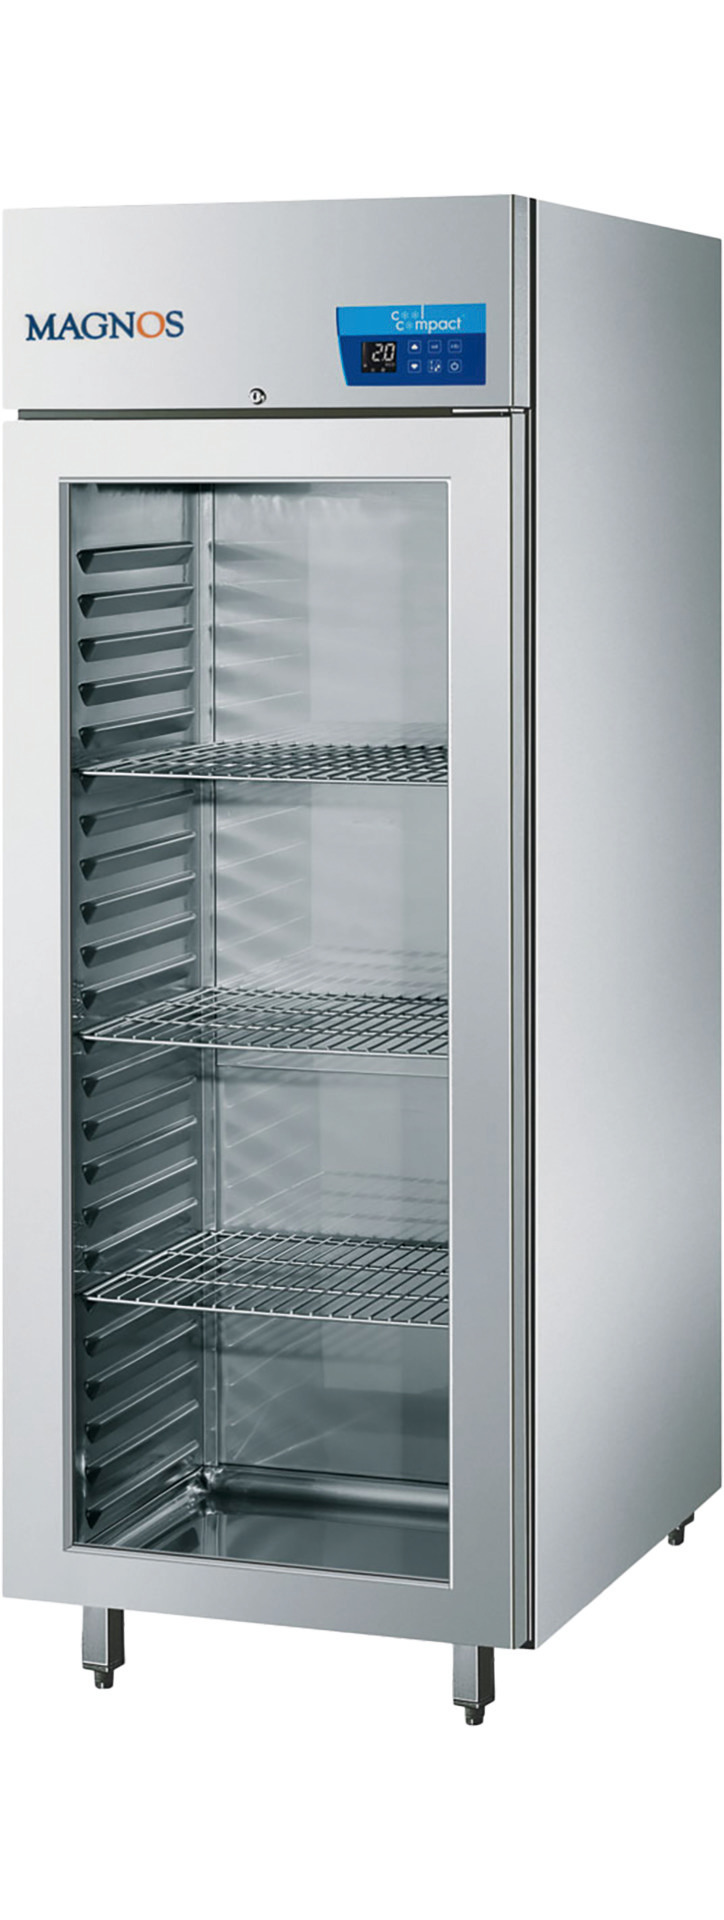 Umluft-Glastürkühlschrank 23 x GN 2/1 / zentralgekühlt